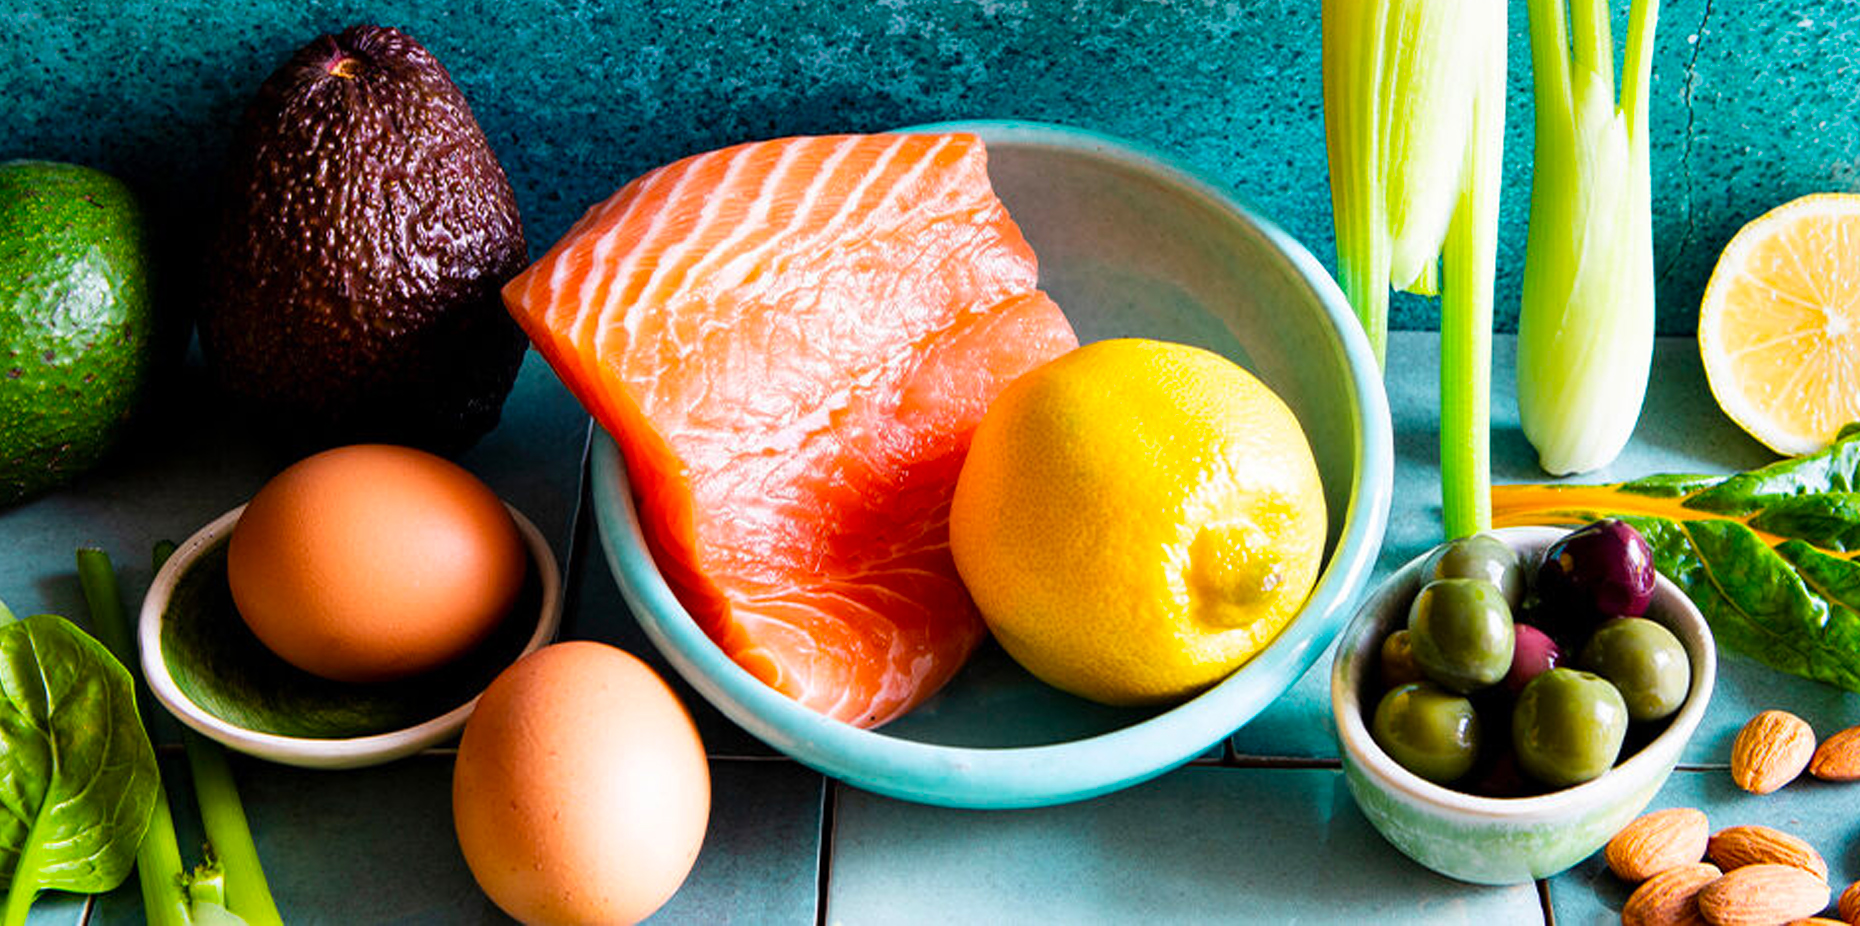 12 Of The Healthiest Breakfast Foods